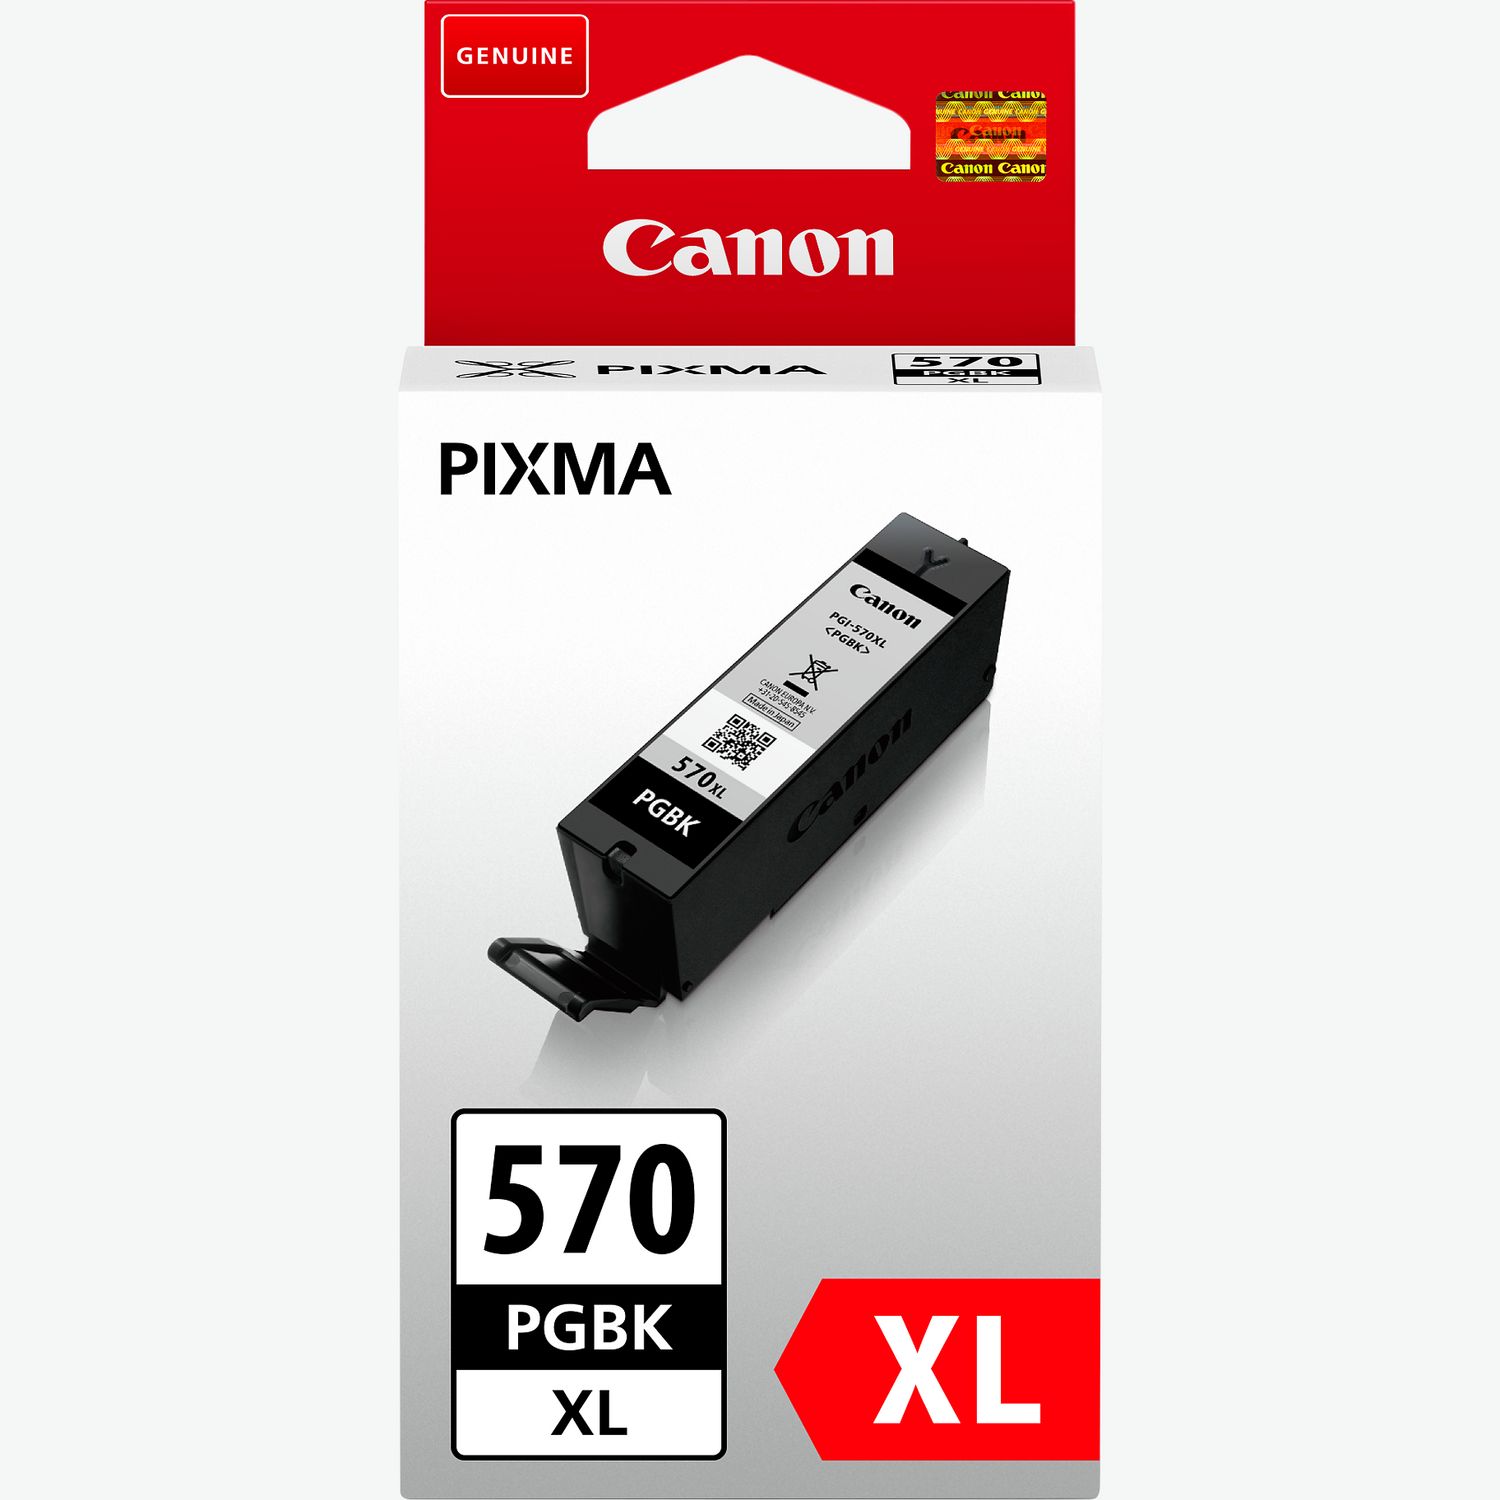 Cartouches rechargeables PGI─570 / CLI─571 pour Canon sur Encre